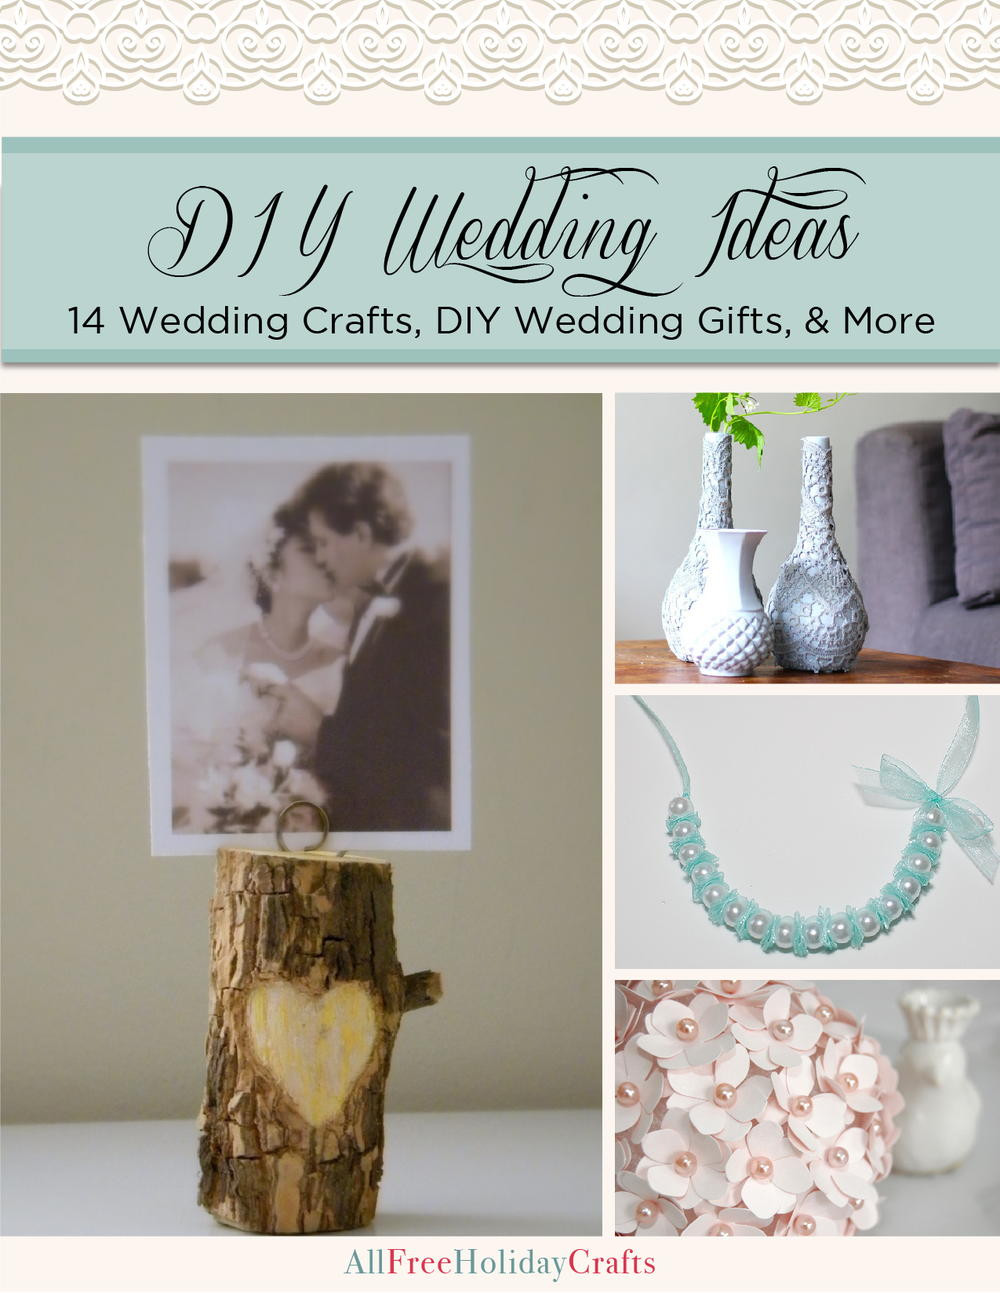 Wedding Gift Craft Ideas
 "DIY Wedding Ideas 14 Wedding Crafts DIY Wedding Gifts